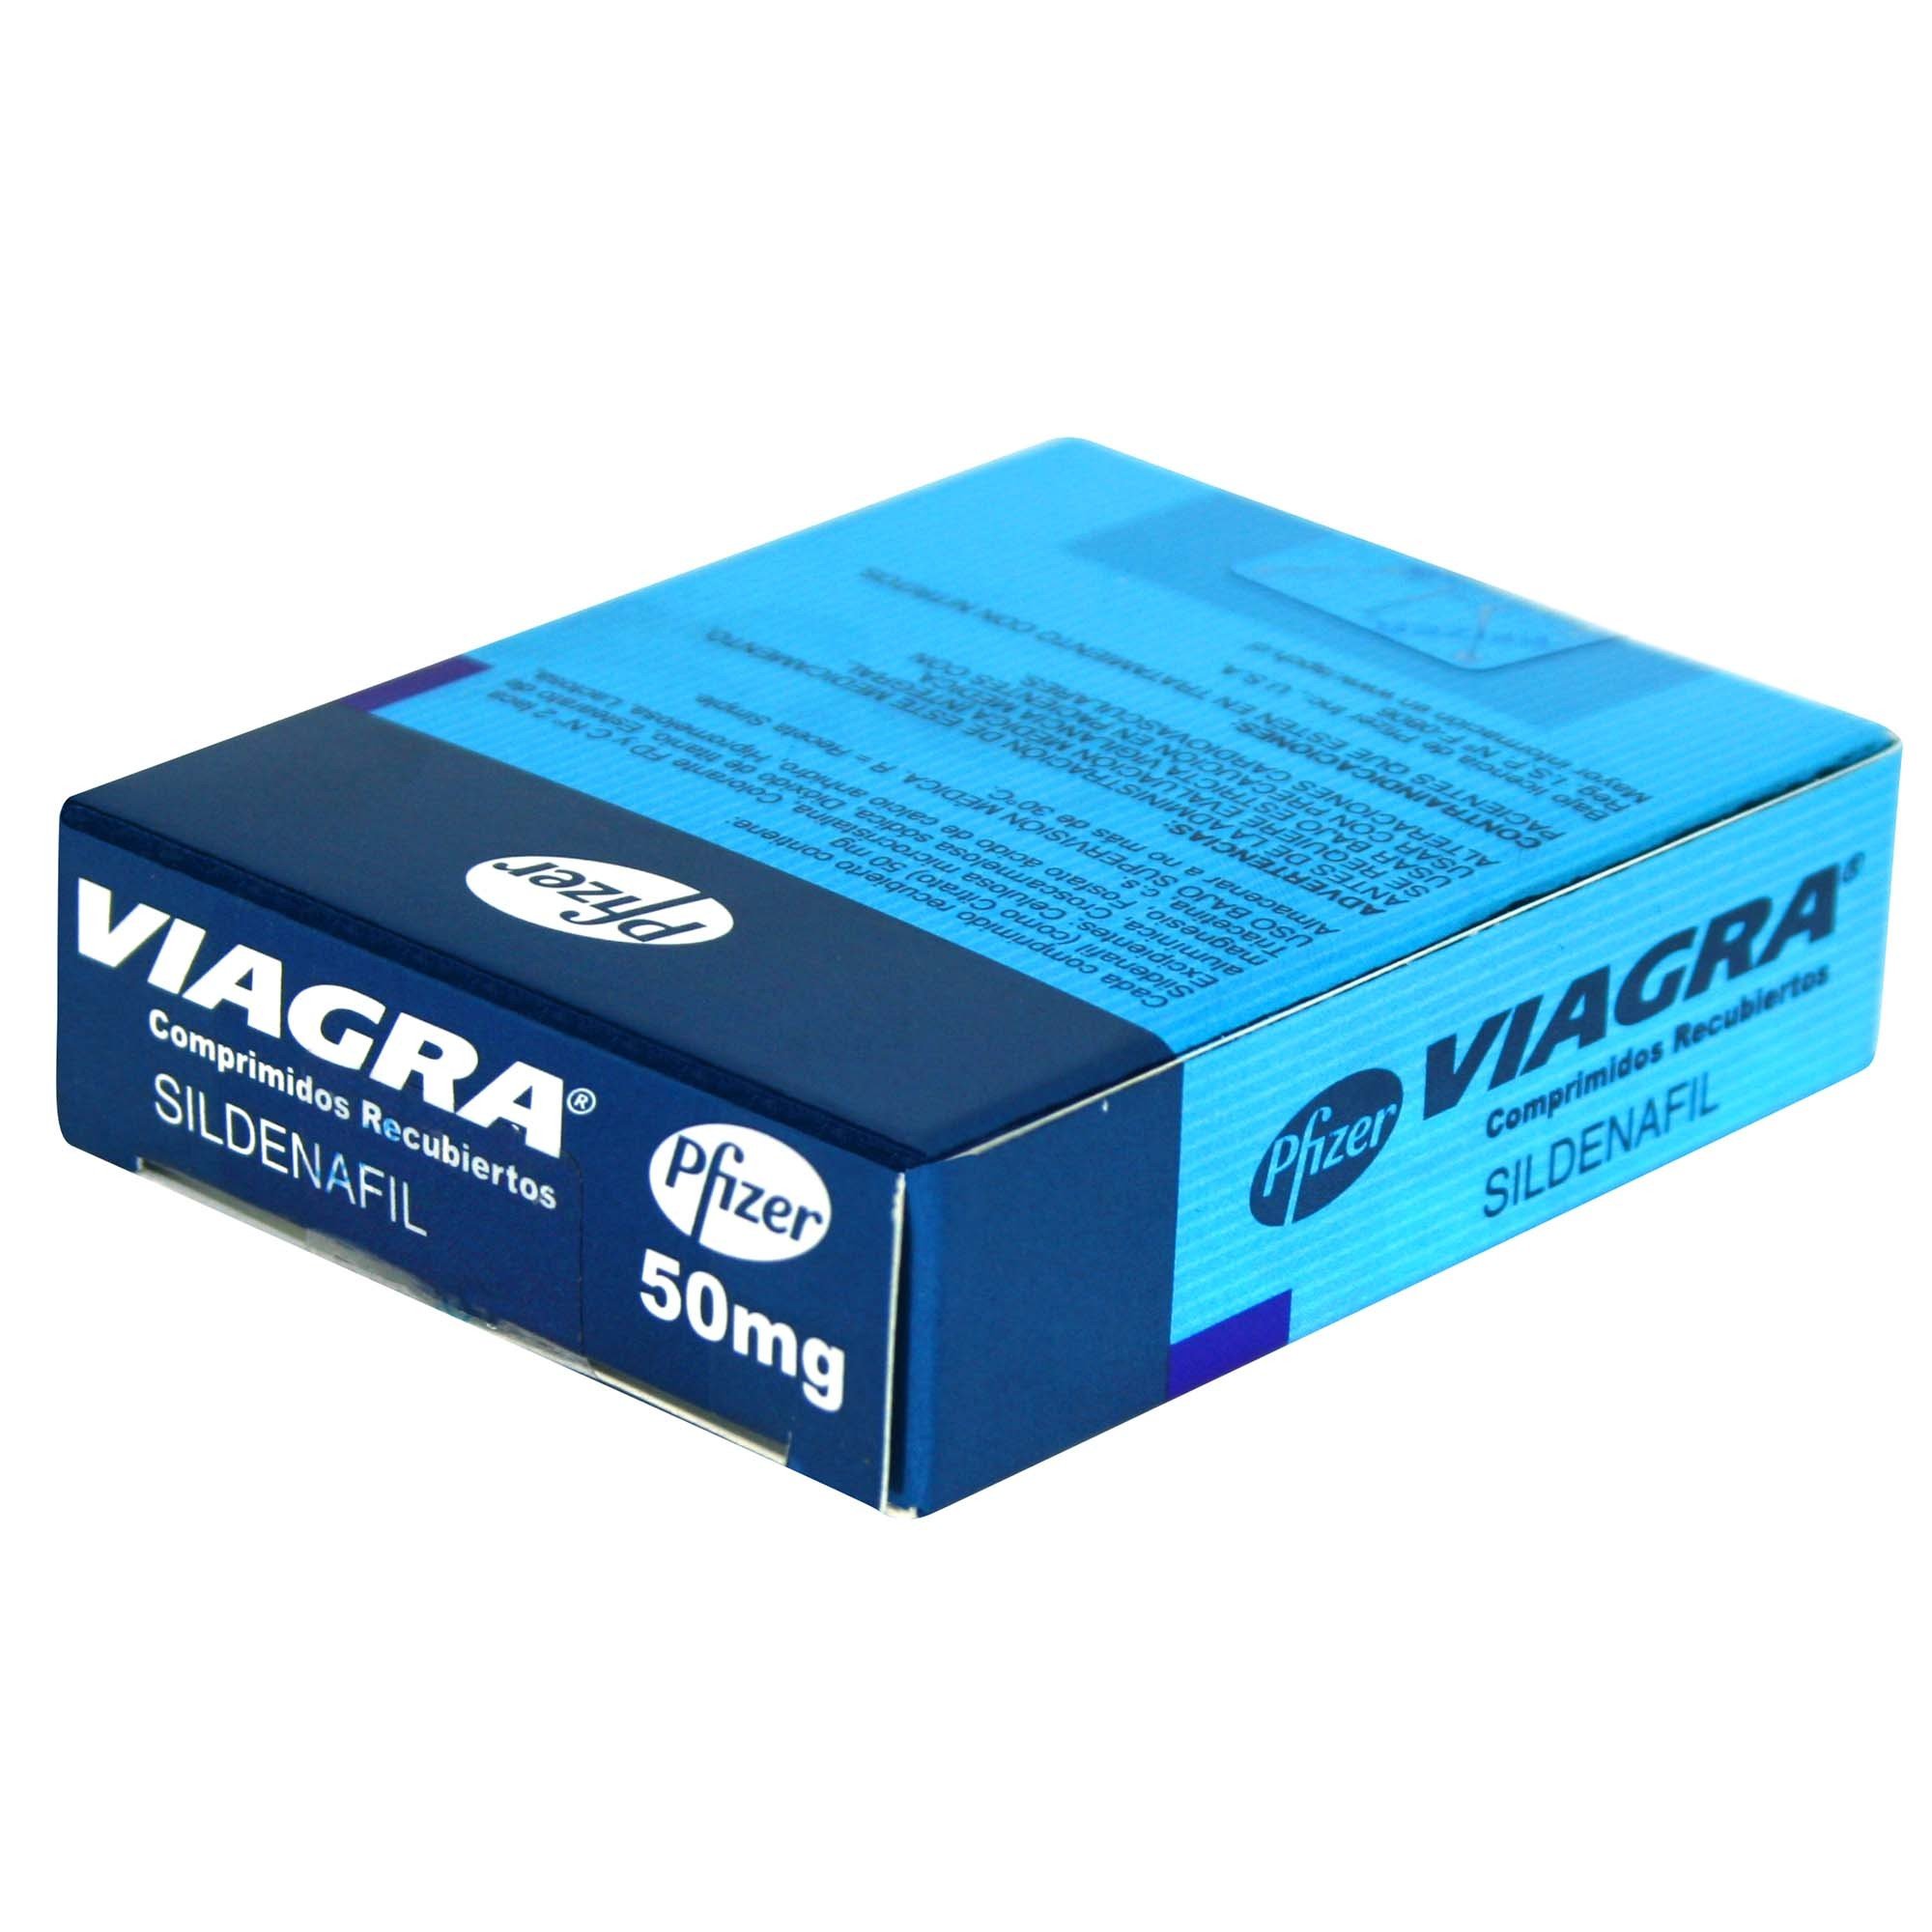 Viagra Sildenafil 50 mg 1 Comprimido Recubierto | Farmacias Cruz Verde